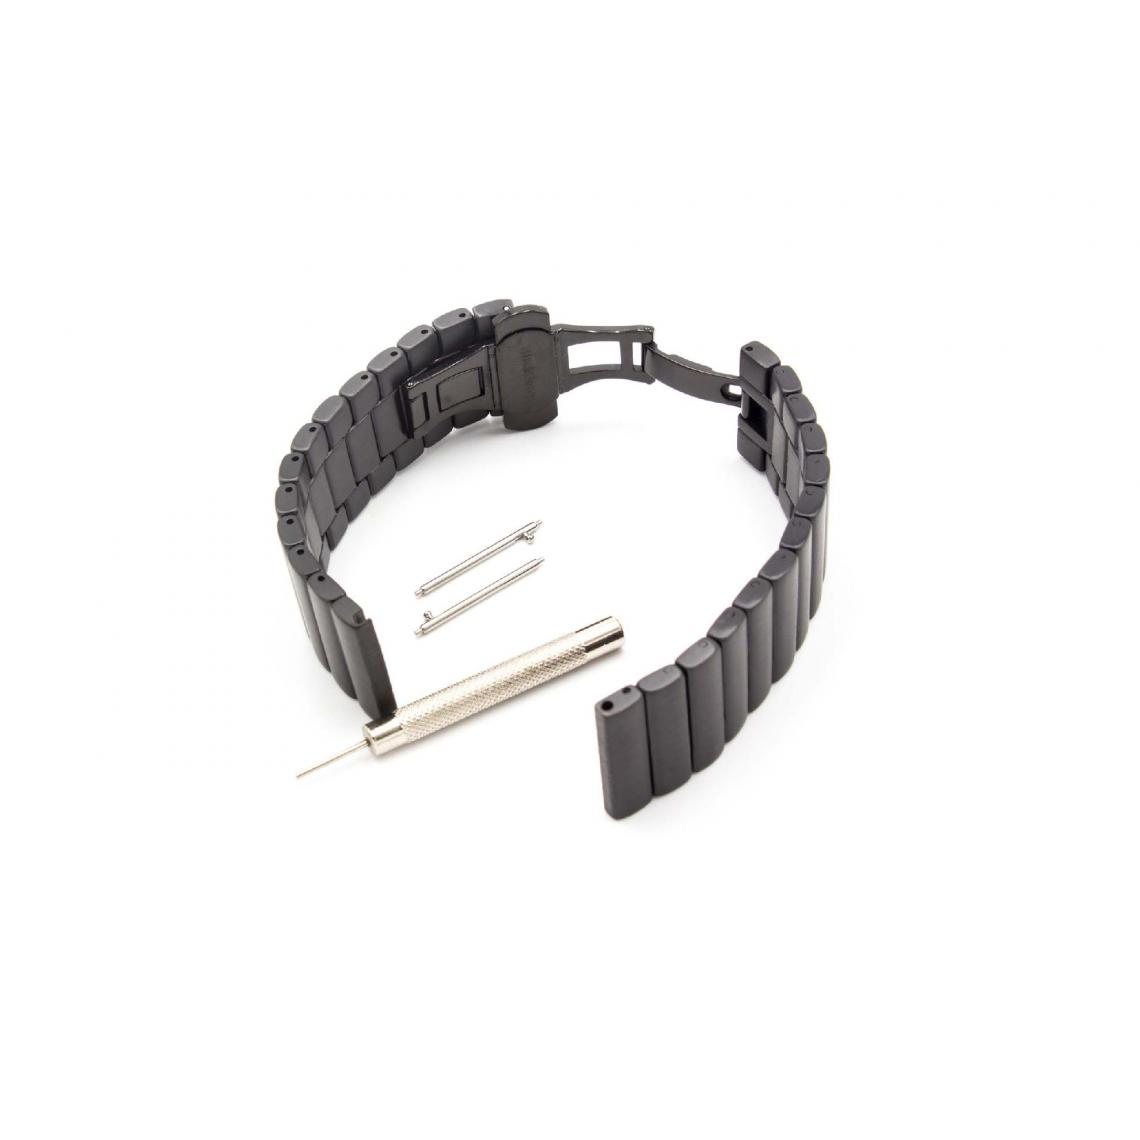 Vhbw - vhbw bracelet compatible avec LG G Watch, R Watch, Urban montre connectée - 19 cm acier inoxydable noir - Accessoires montres connectées